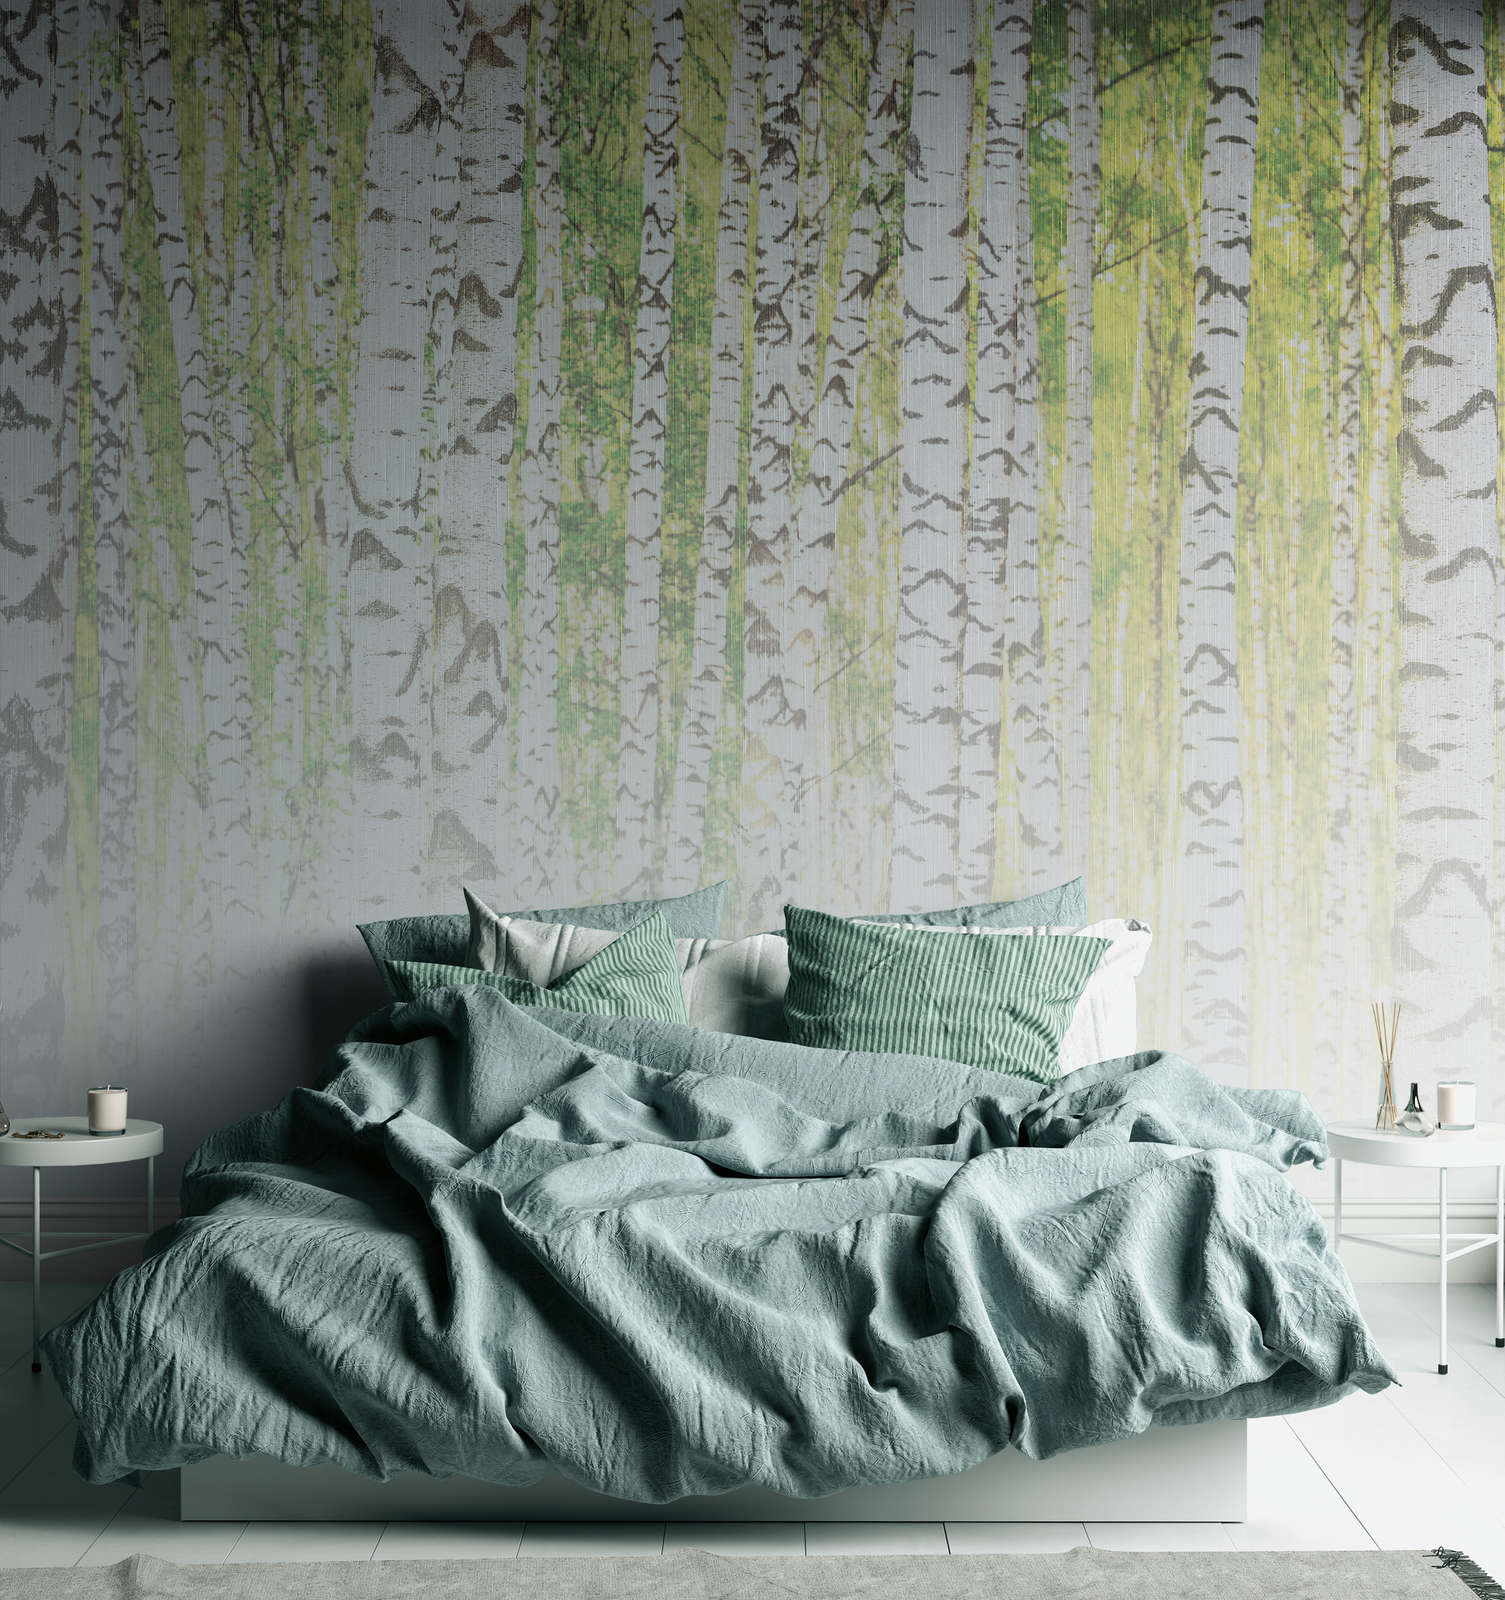             Papier peint panoramique forêt de bouleaux aspect lin - vert, blanc, noir
        